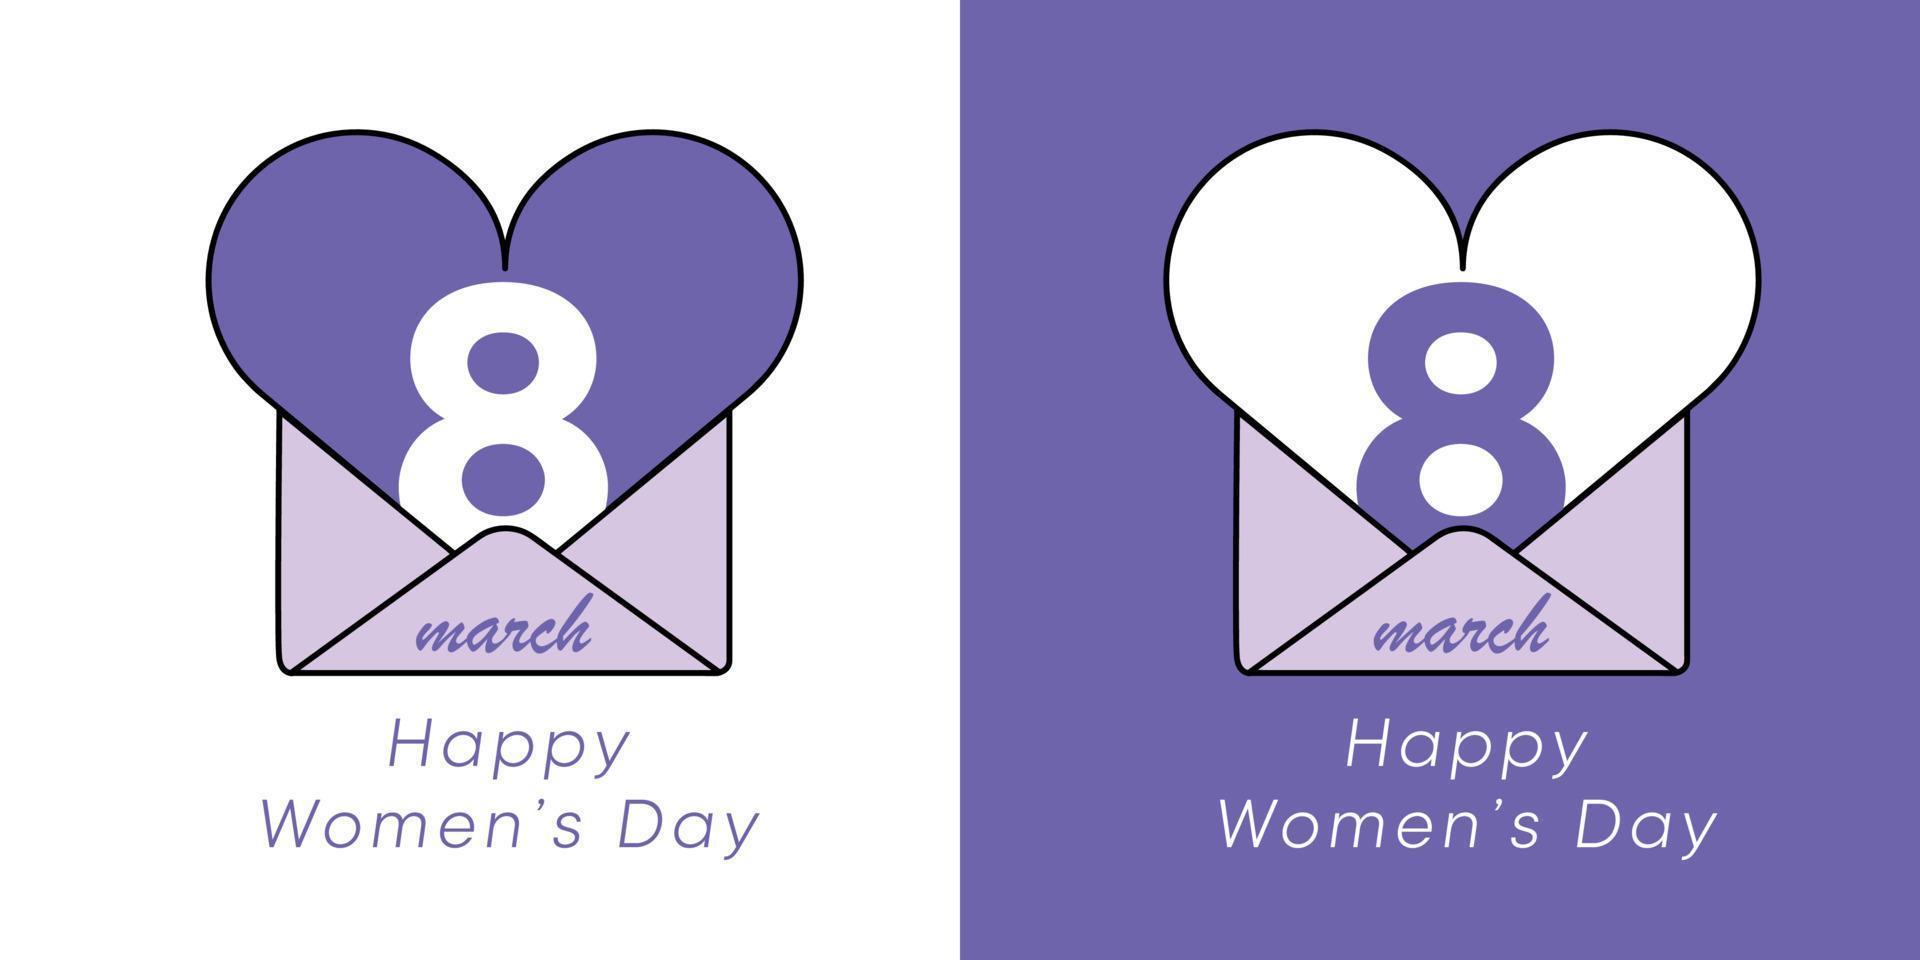 8 mars conception de la journée de la femme heureuse et création de logo. Conception de la journée internationale de la femme du 8 mars sur fond blanc et dans des couleurs violettes. le chiffre 8 est ouvert à l'intérieur de la lettre avec une enveloppe en forme de cœur. vecteur